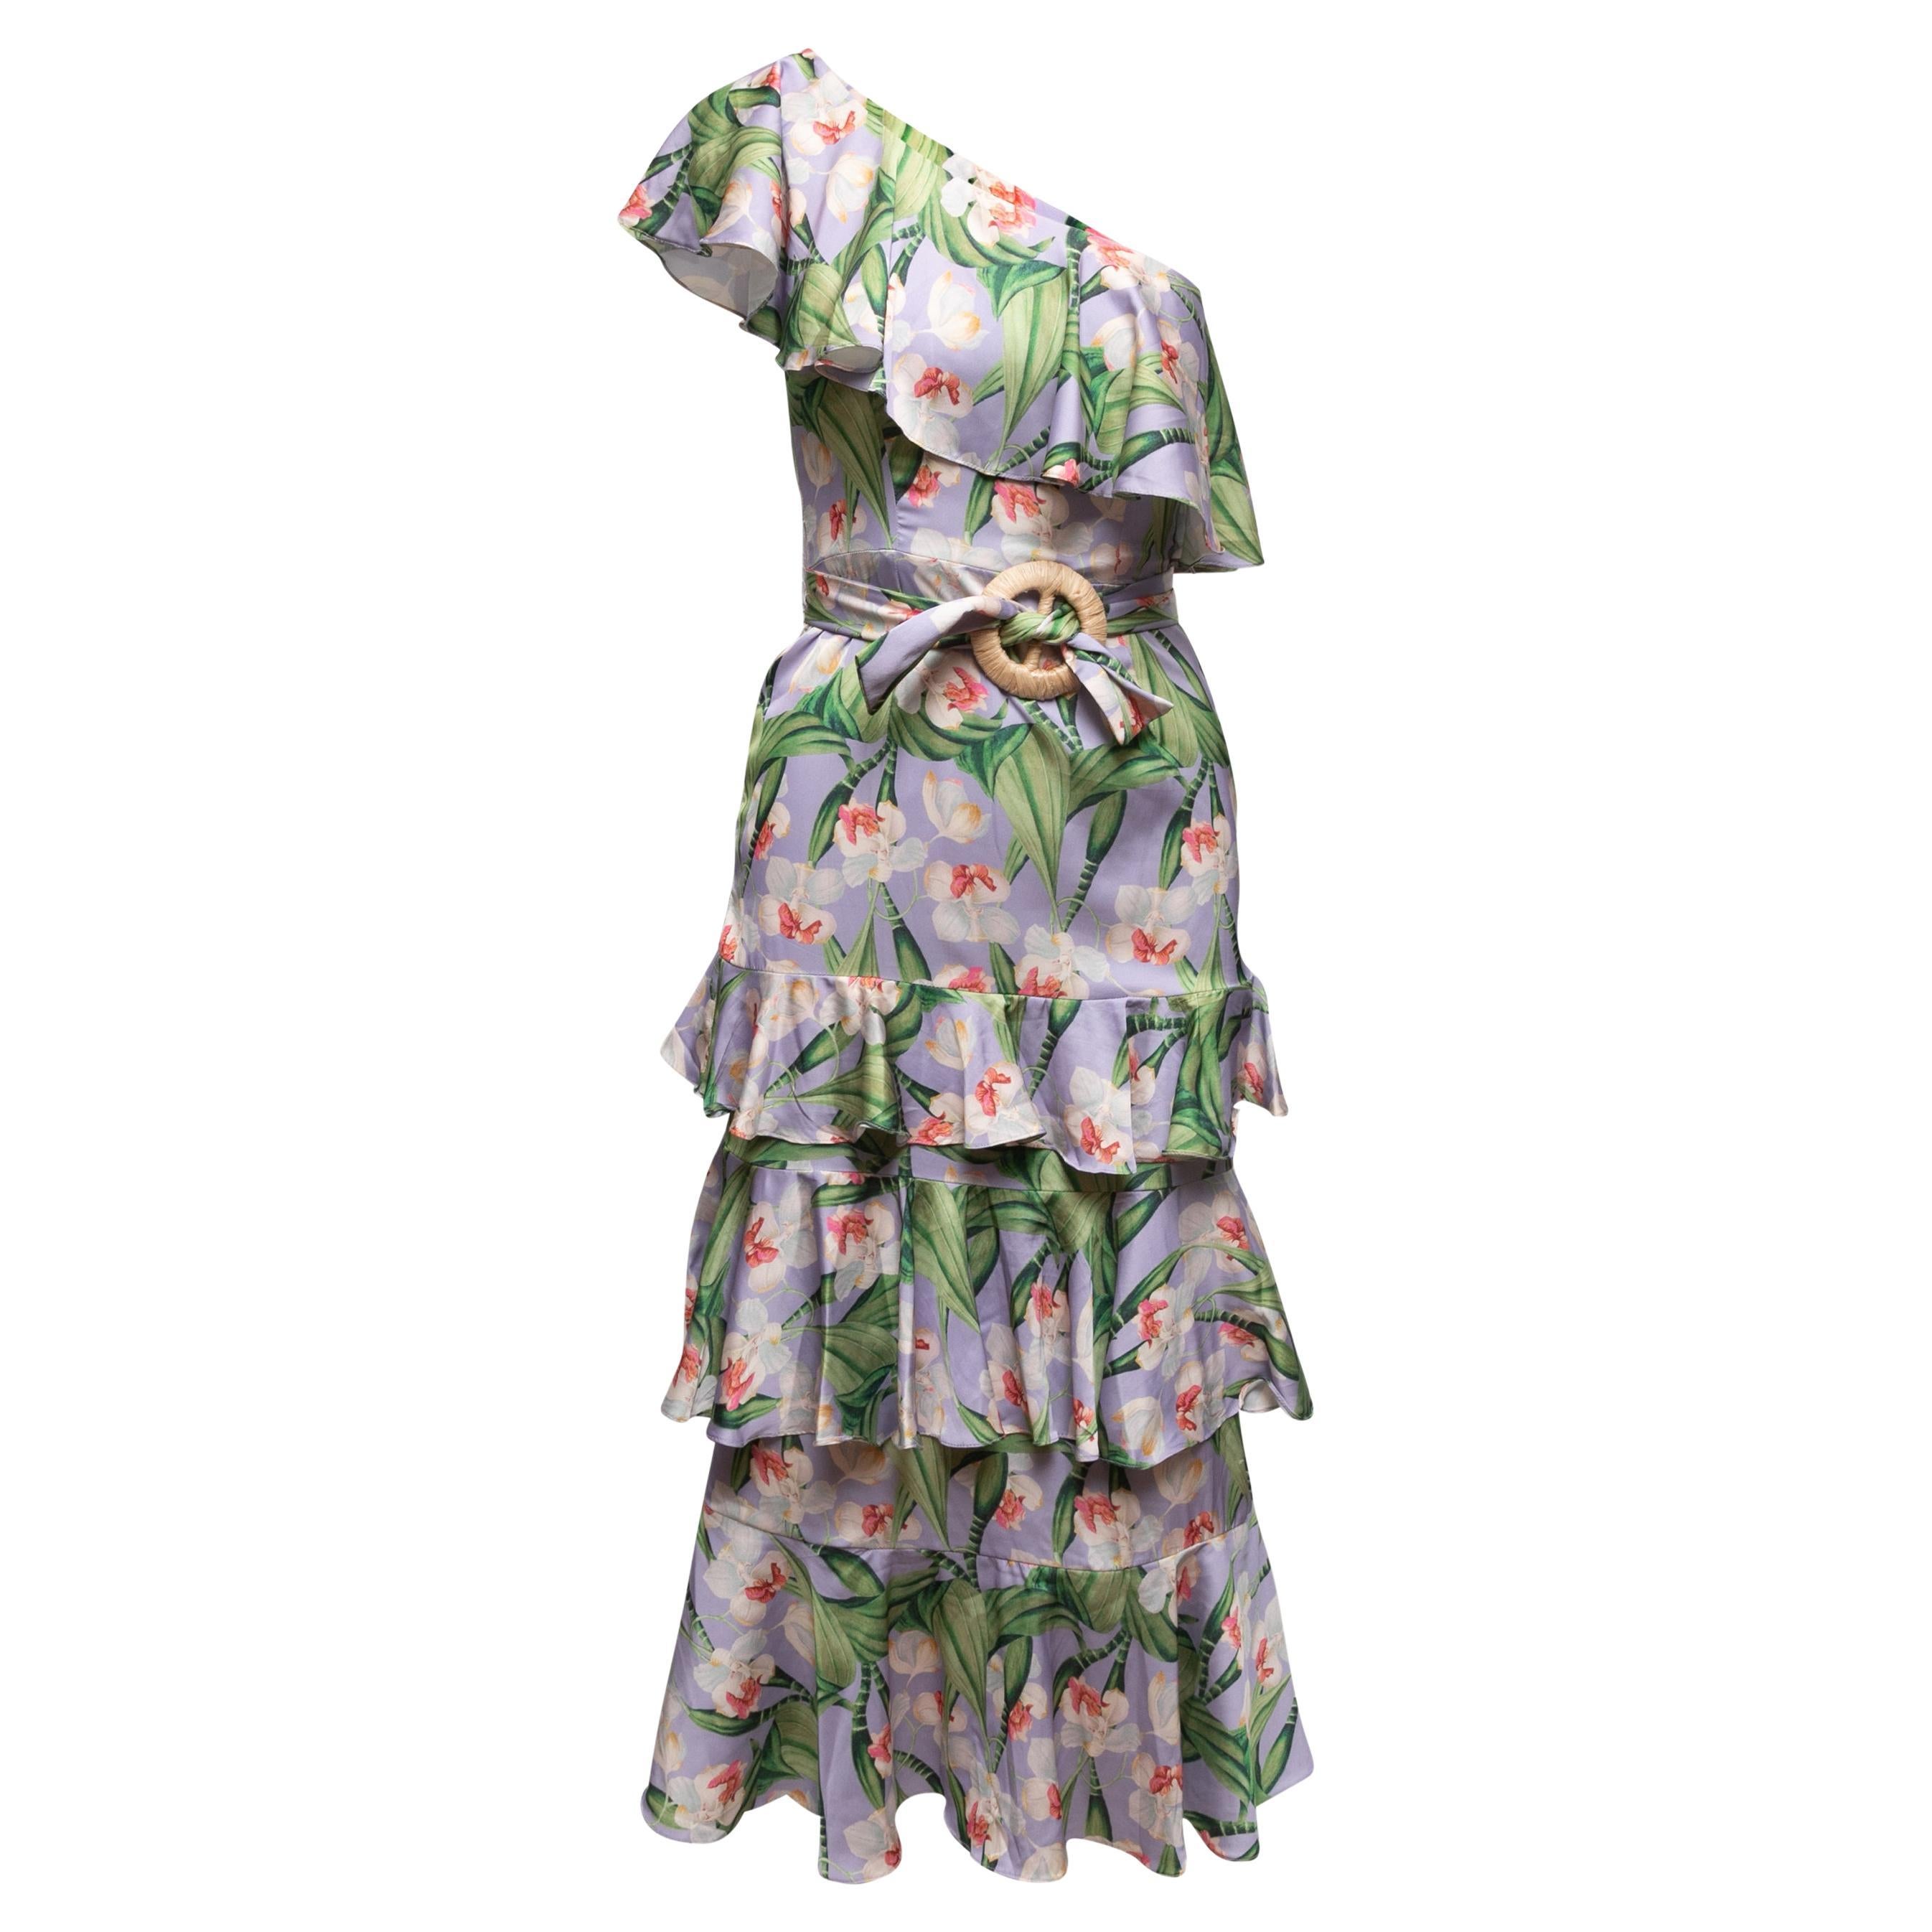 Flieder & mehrfarbig Patbo Ein-Schulter-Kleid mit Blumendruck Größe US 0